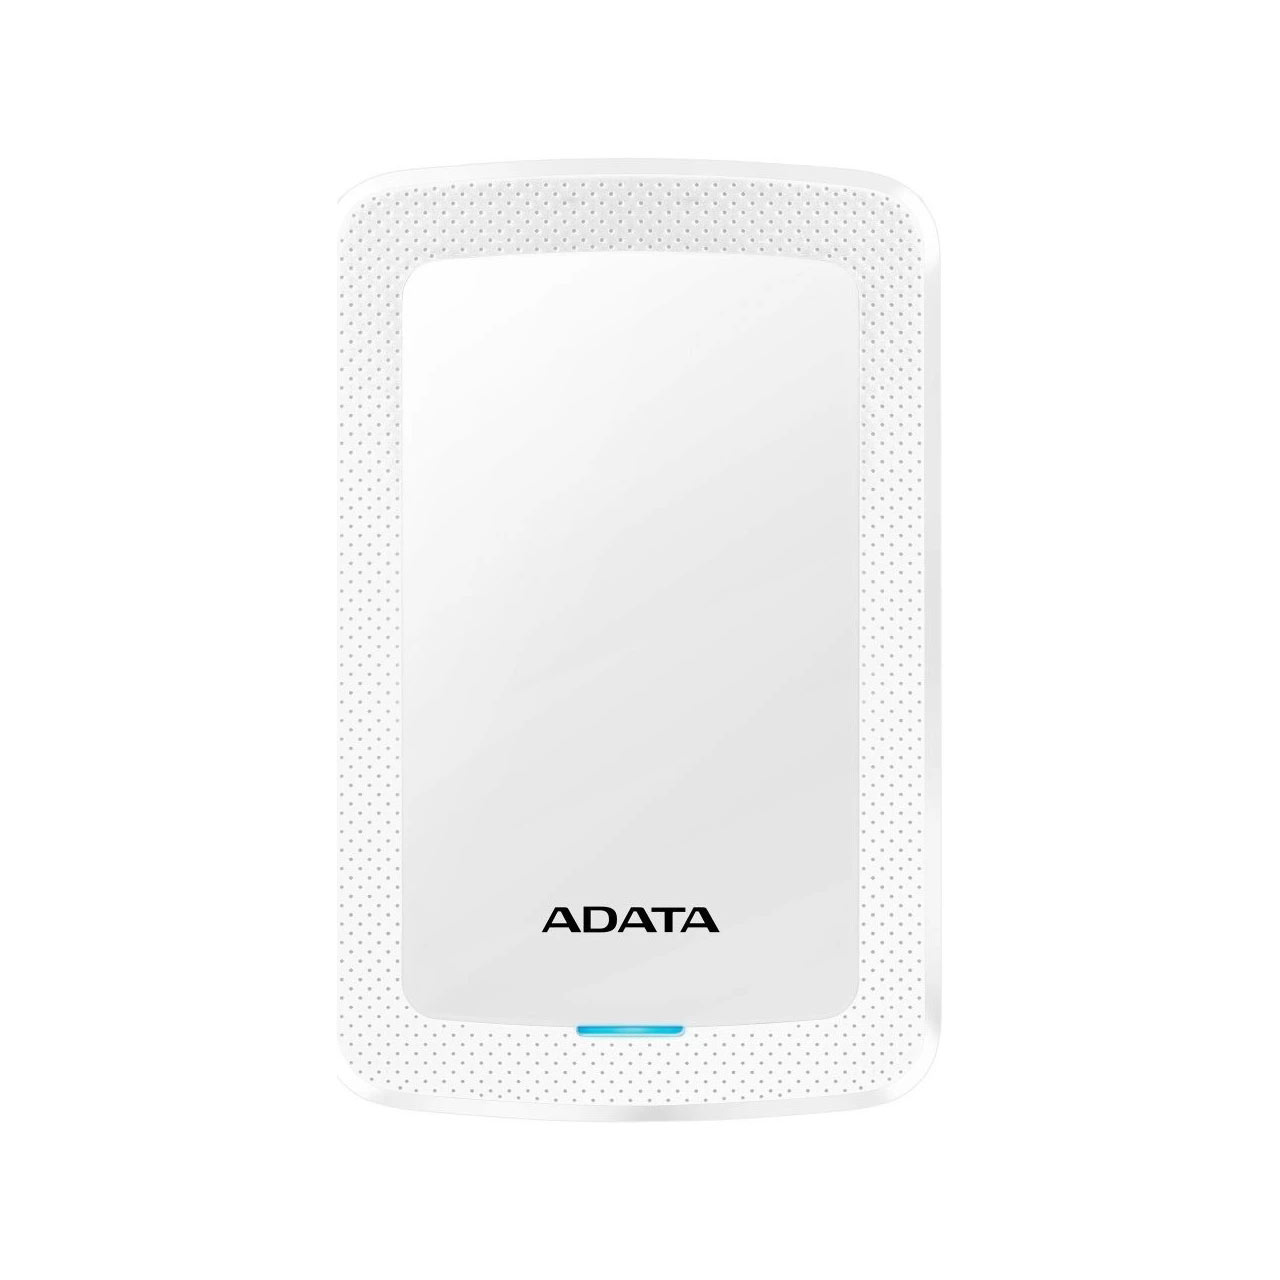 هارد اکسترنال ADATA مدل SLIM HV300 ظرفیت 1TB - سفید (گارانتی شرکت آونگ